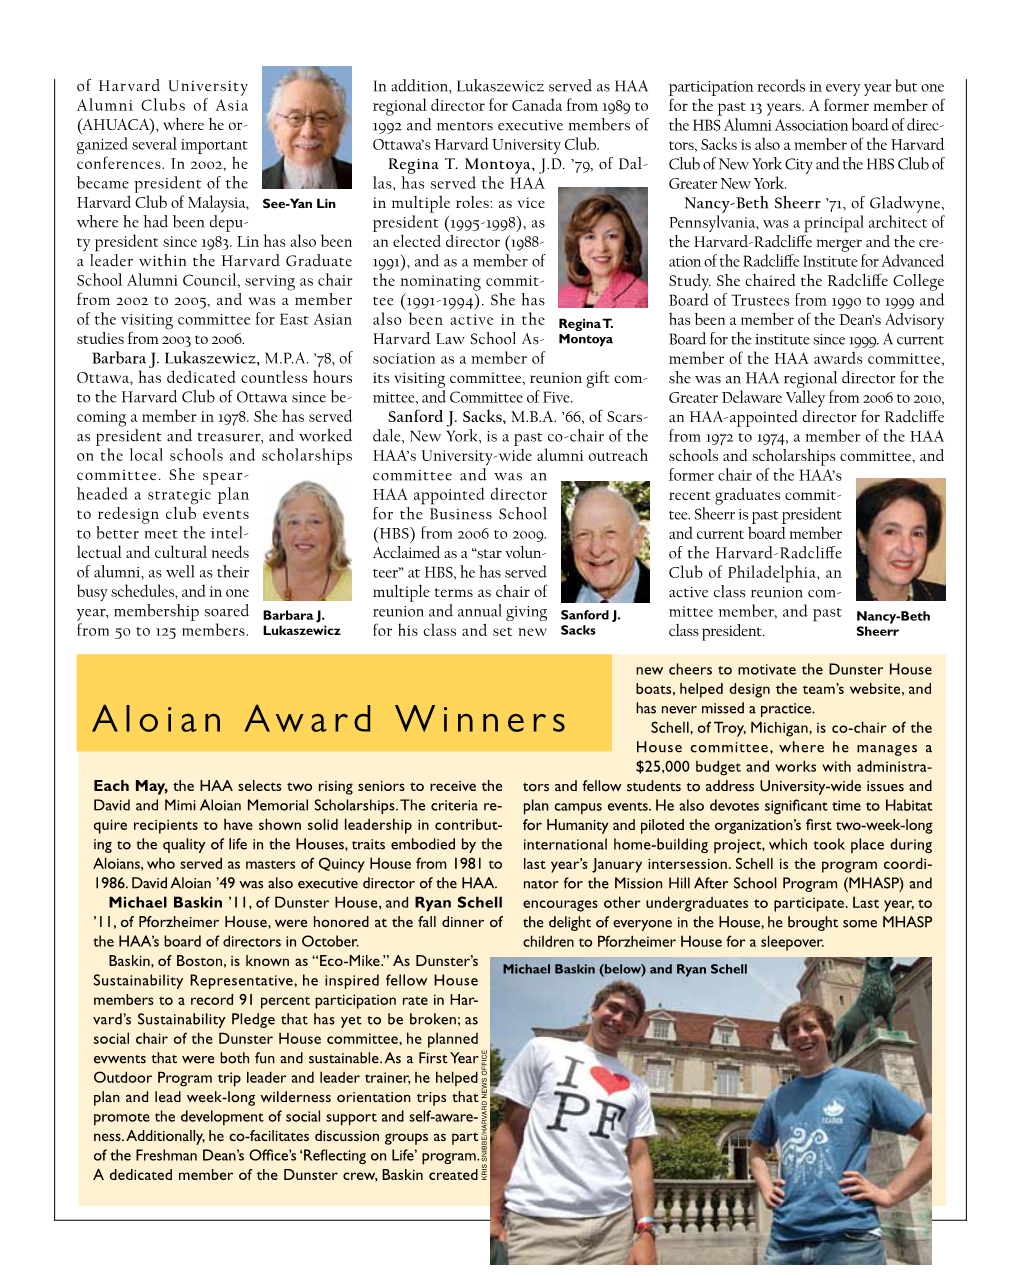 Aloian Award Winners